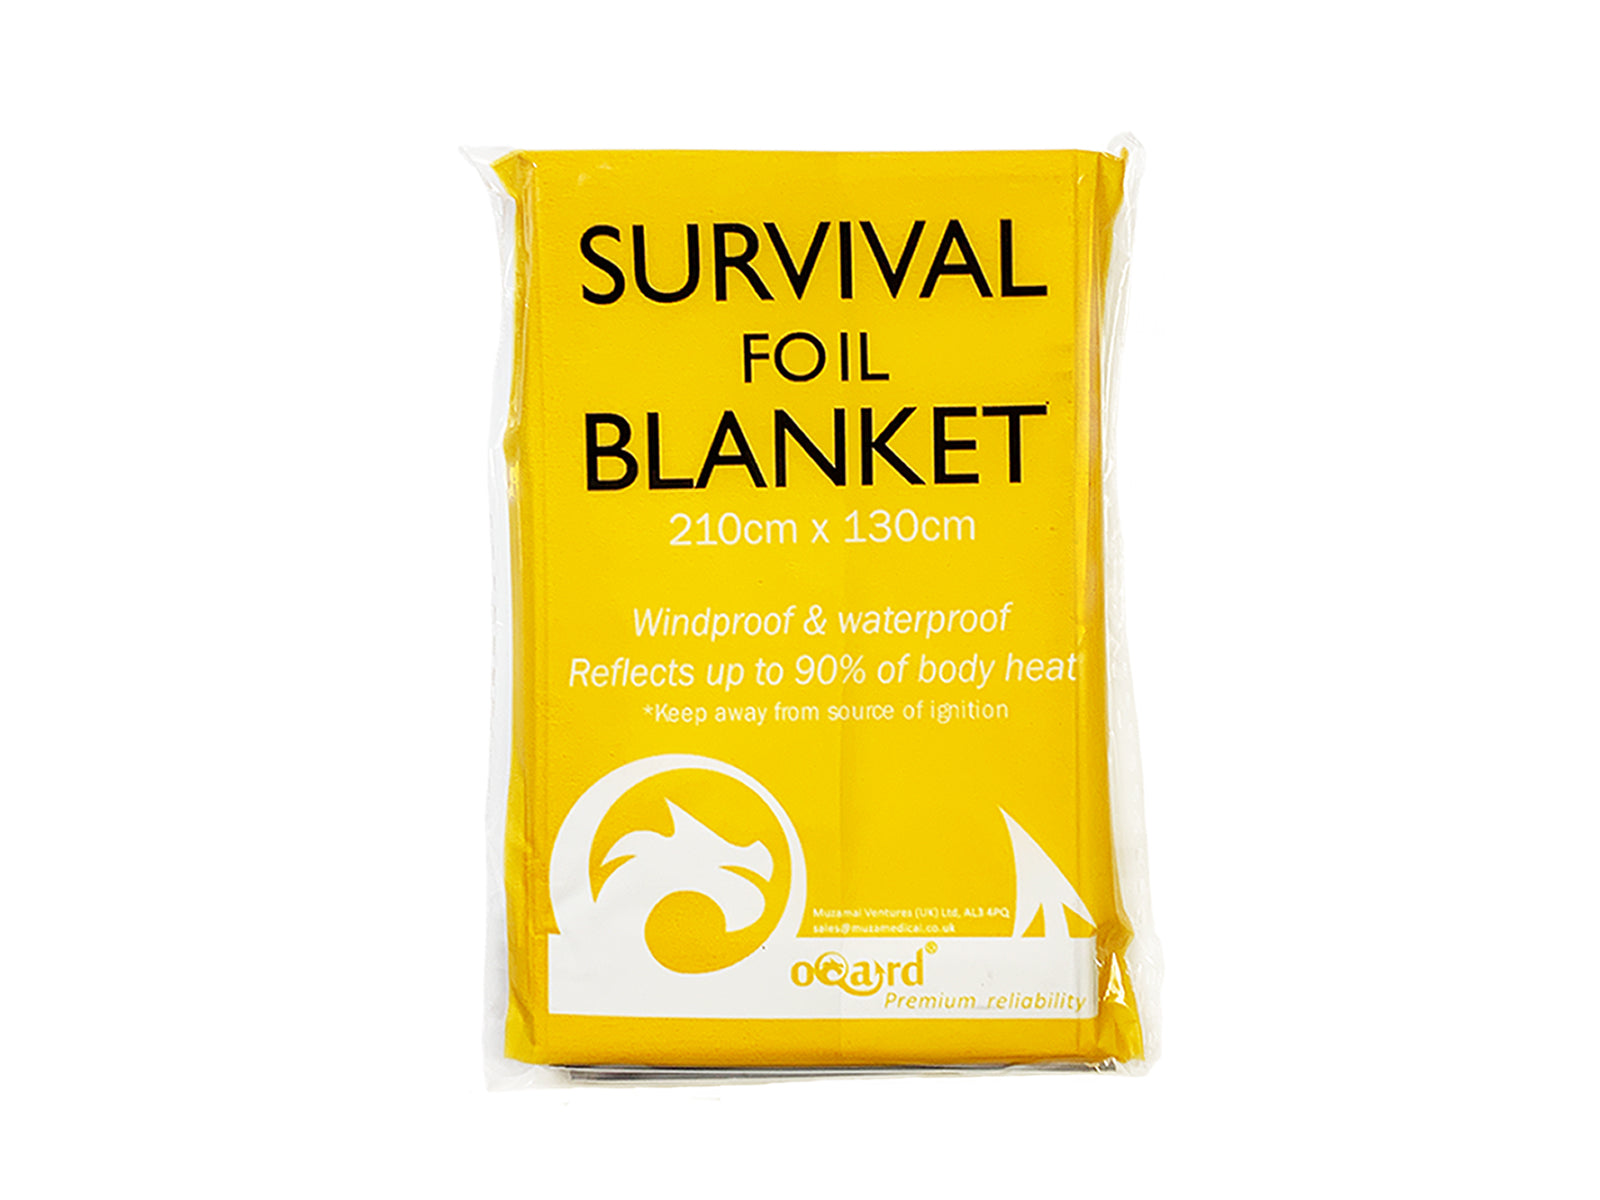 Oqard Survival Foil Blanket